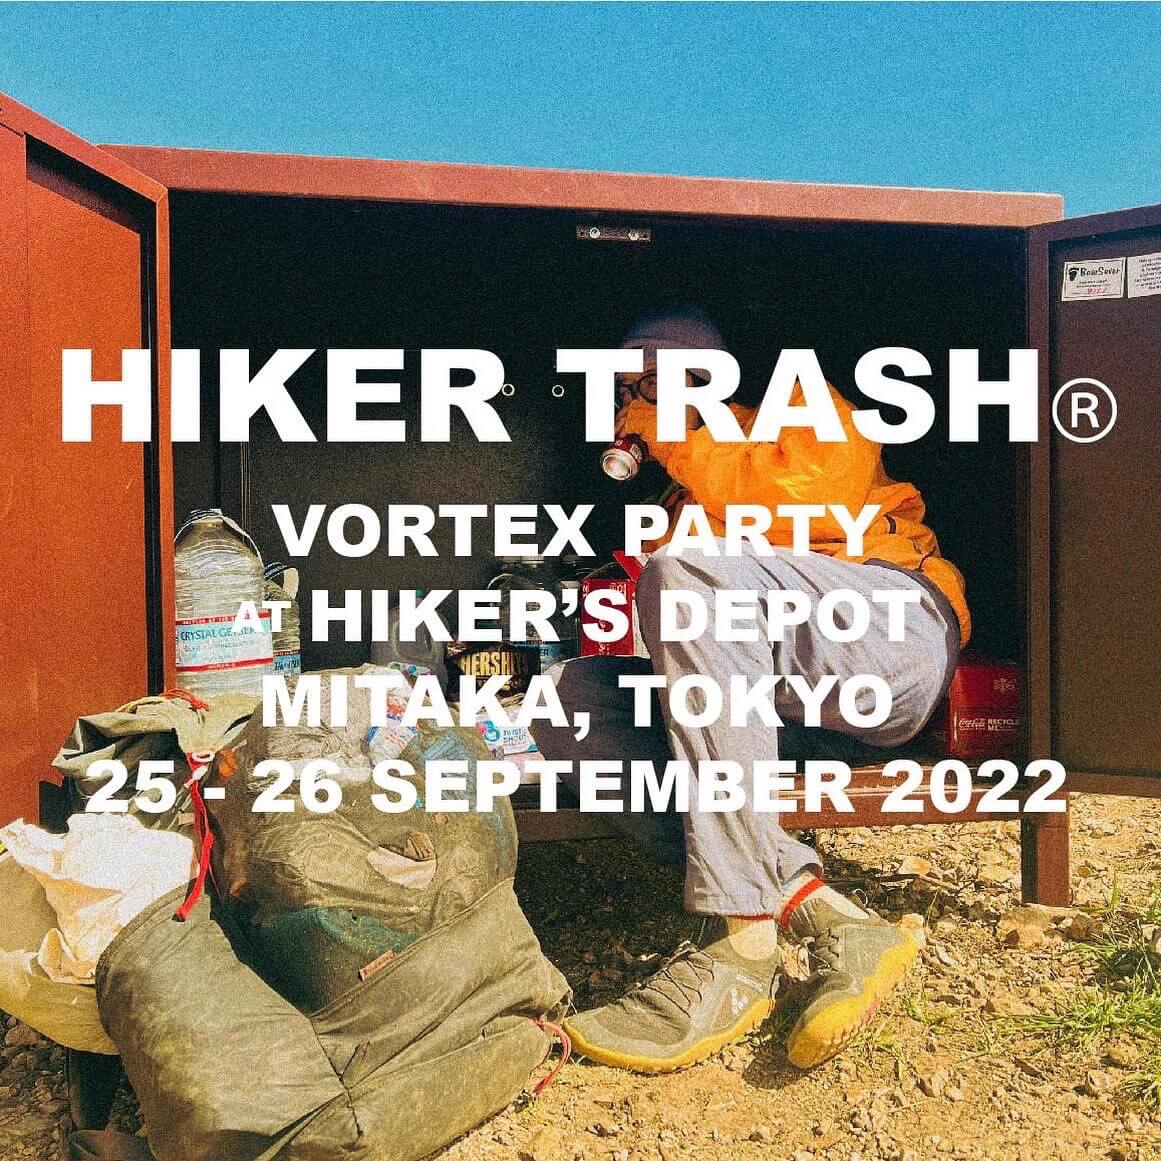 HIKER TRASH展示即売会<br/>“Hiker Trash Vortex”